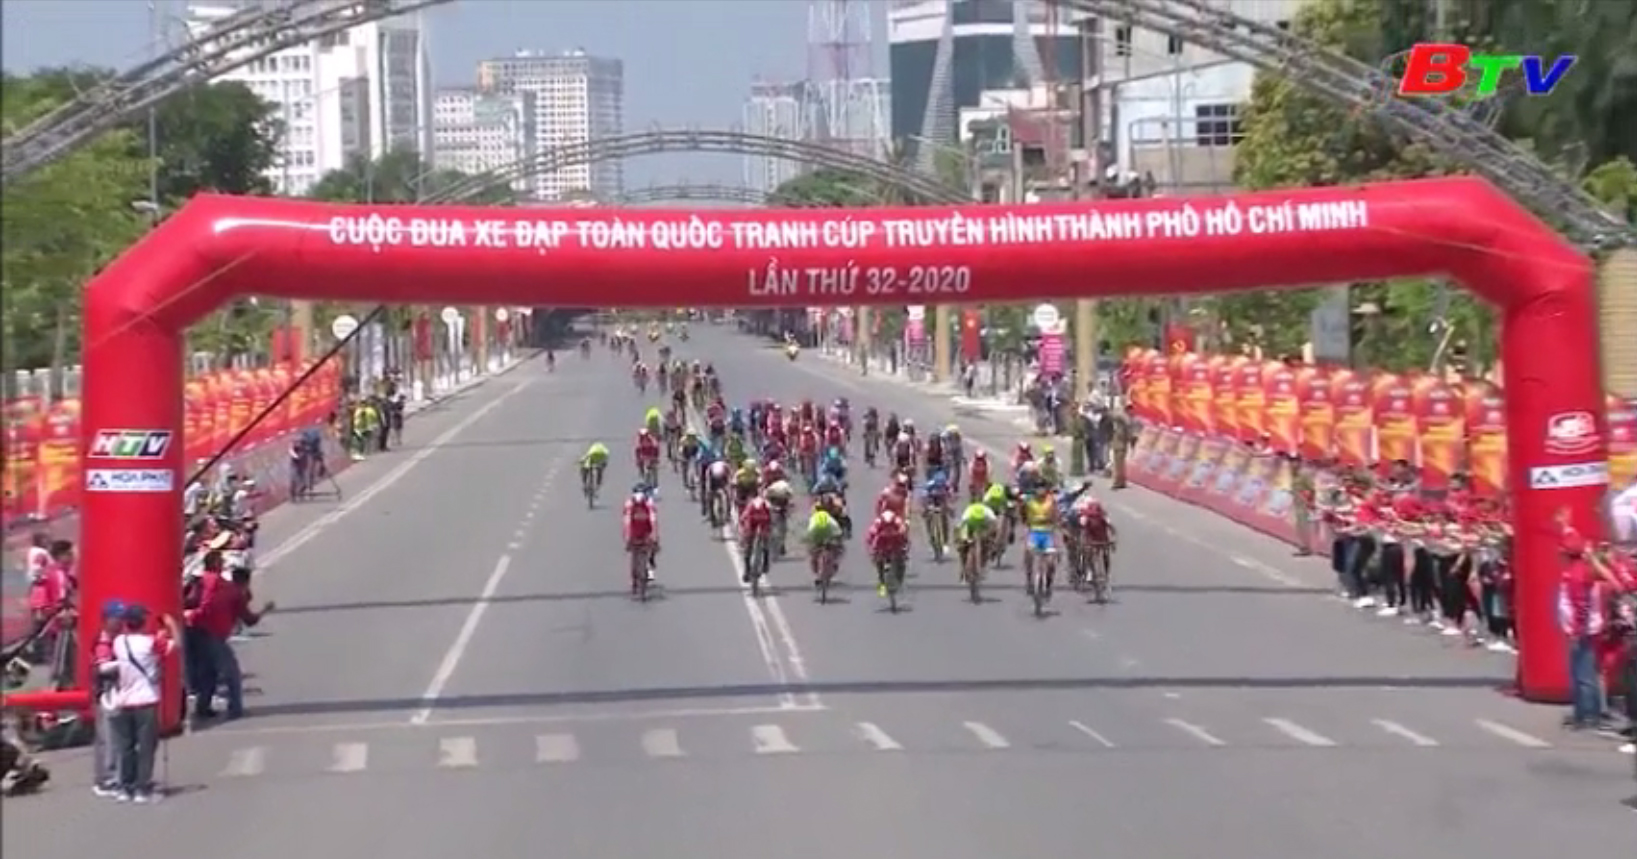 Khởi tranh Cuộc đua xe đạp tranh cúp Truyền hình TP.HCM lần thứ 32 năm 2020